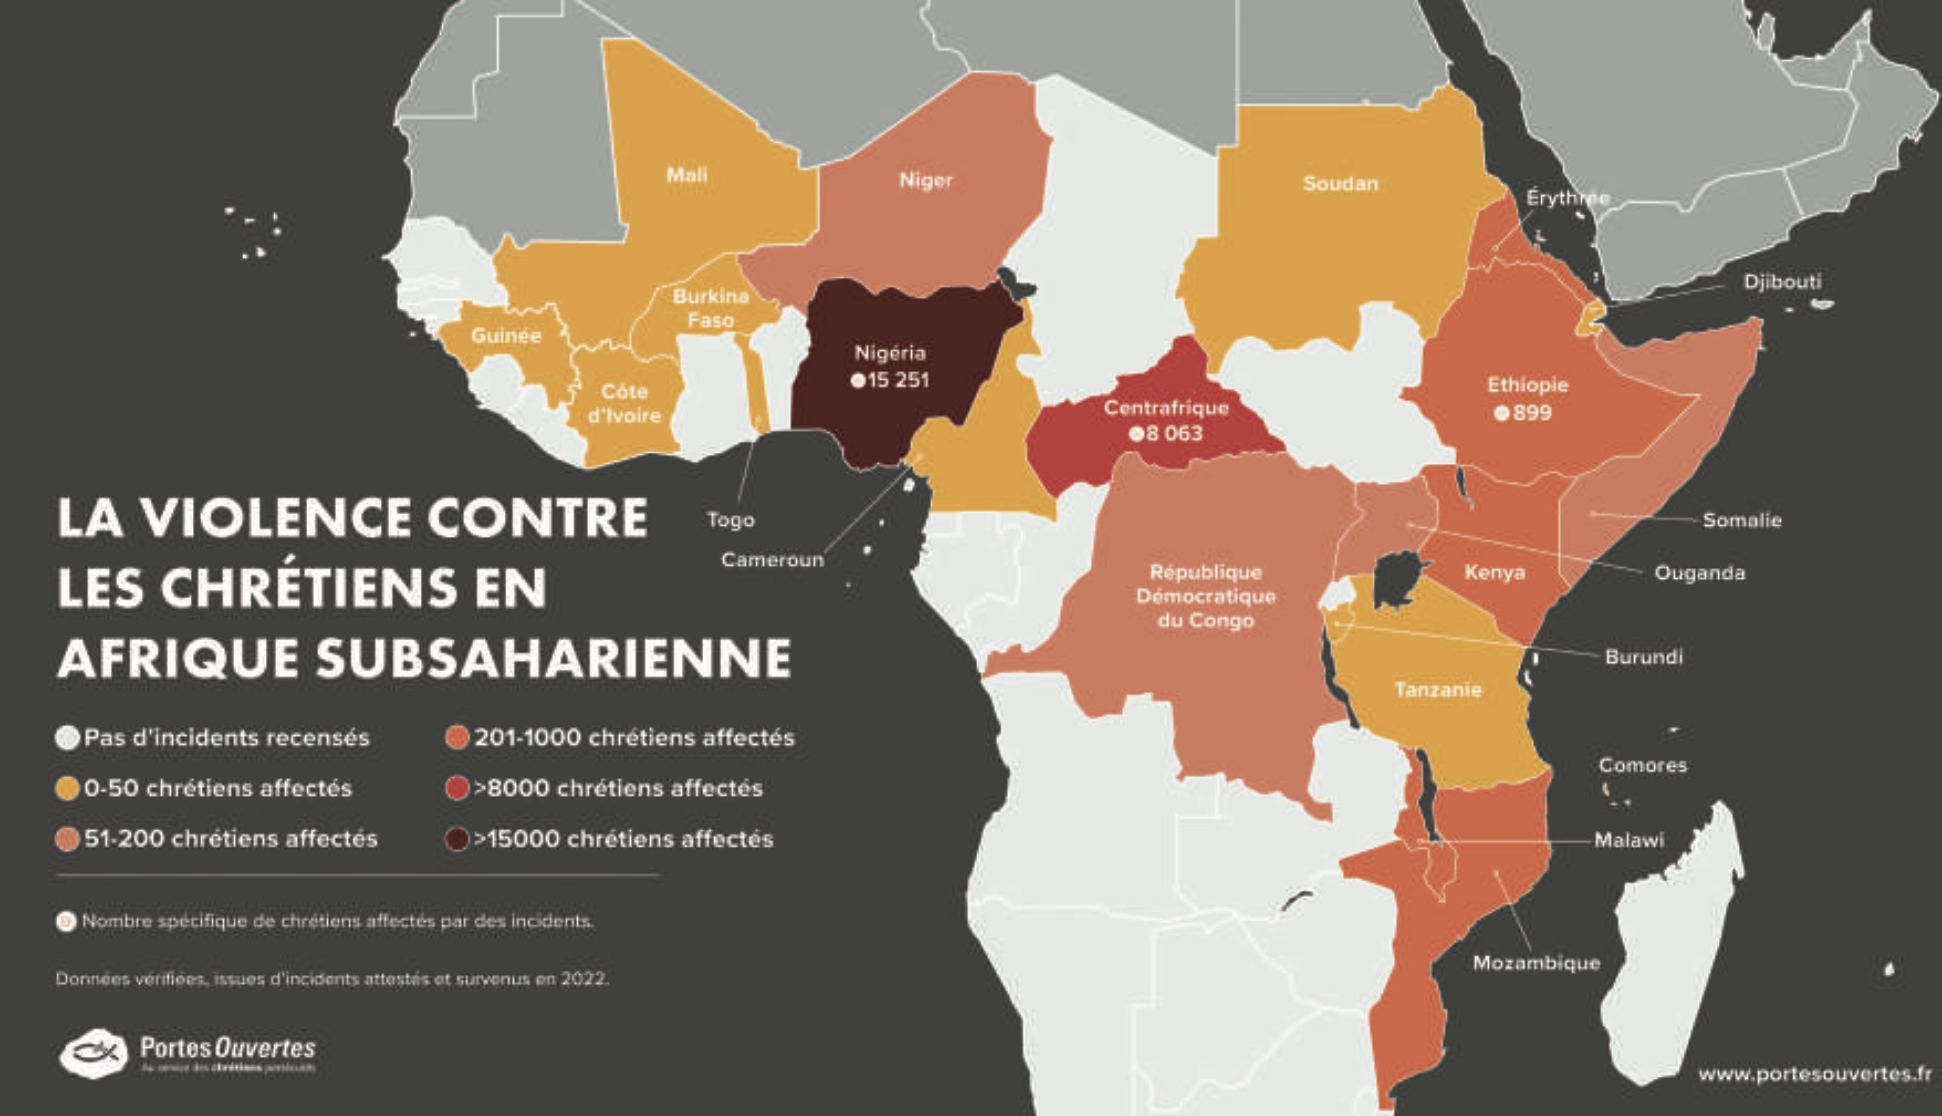 L'ampleur de la violence à l’encontre des civils en Afrique Subsaharienne au cours de la dernière décennie est exceptionnellement alarmante. Le Bureau des Nations Unies pour l'Afrique de l'Ouest et le Sahel, lors d'une audition du Conseil de sécu- rité des Nations Unies en janvier 2023, a qualifié les défis sécuritaires dans la région comme étant « sans précédent »